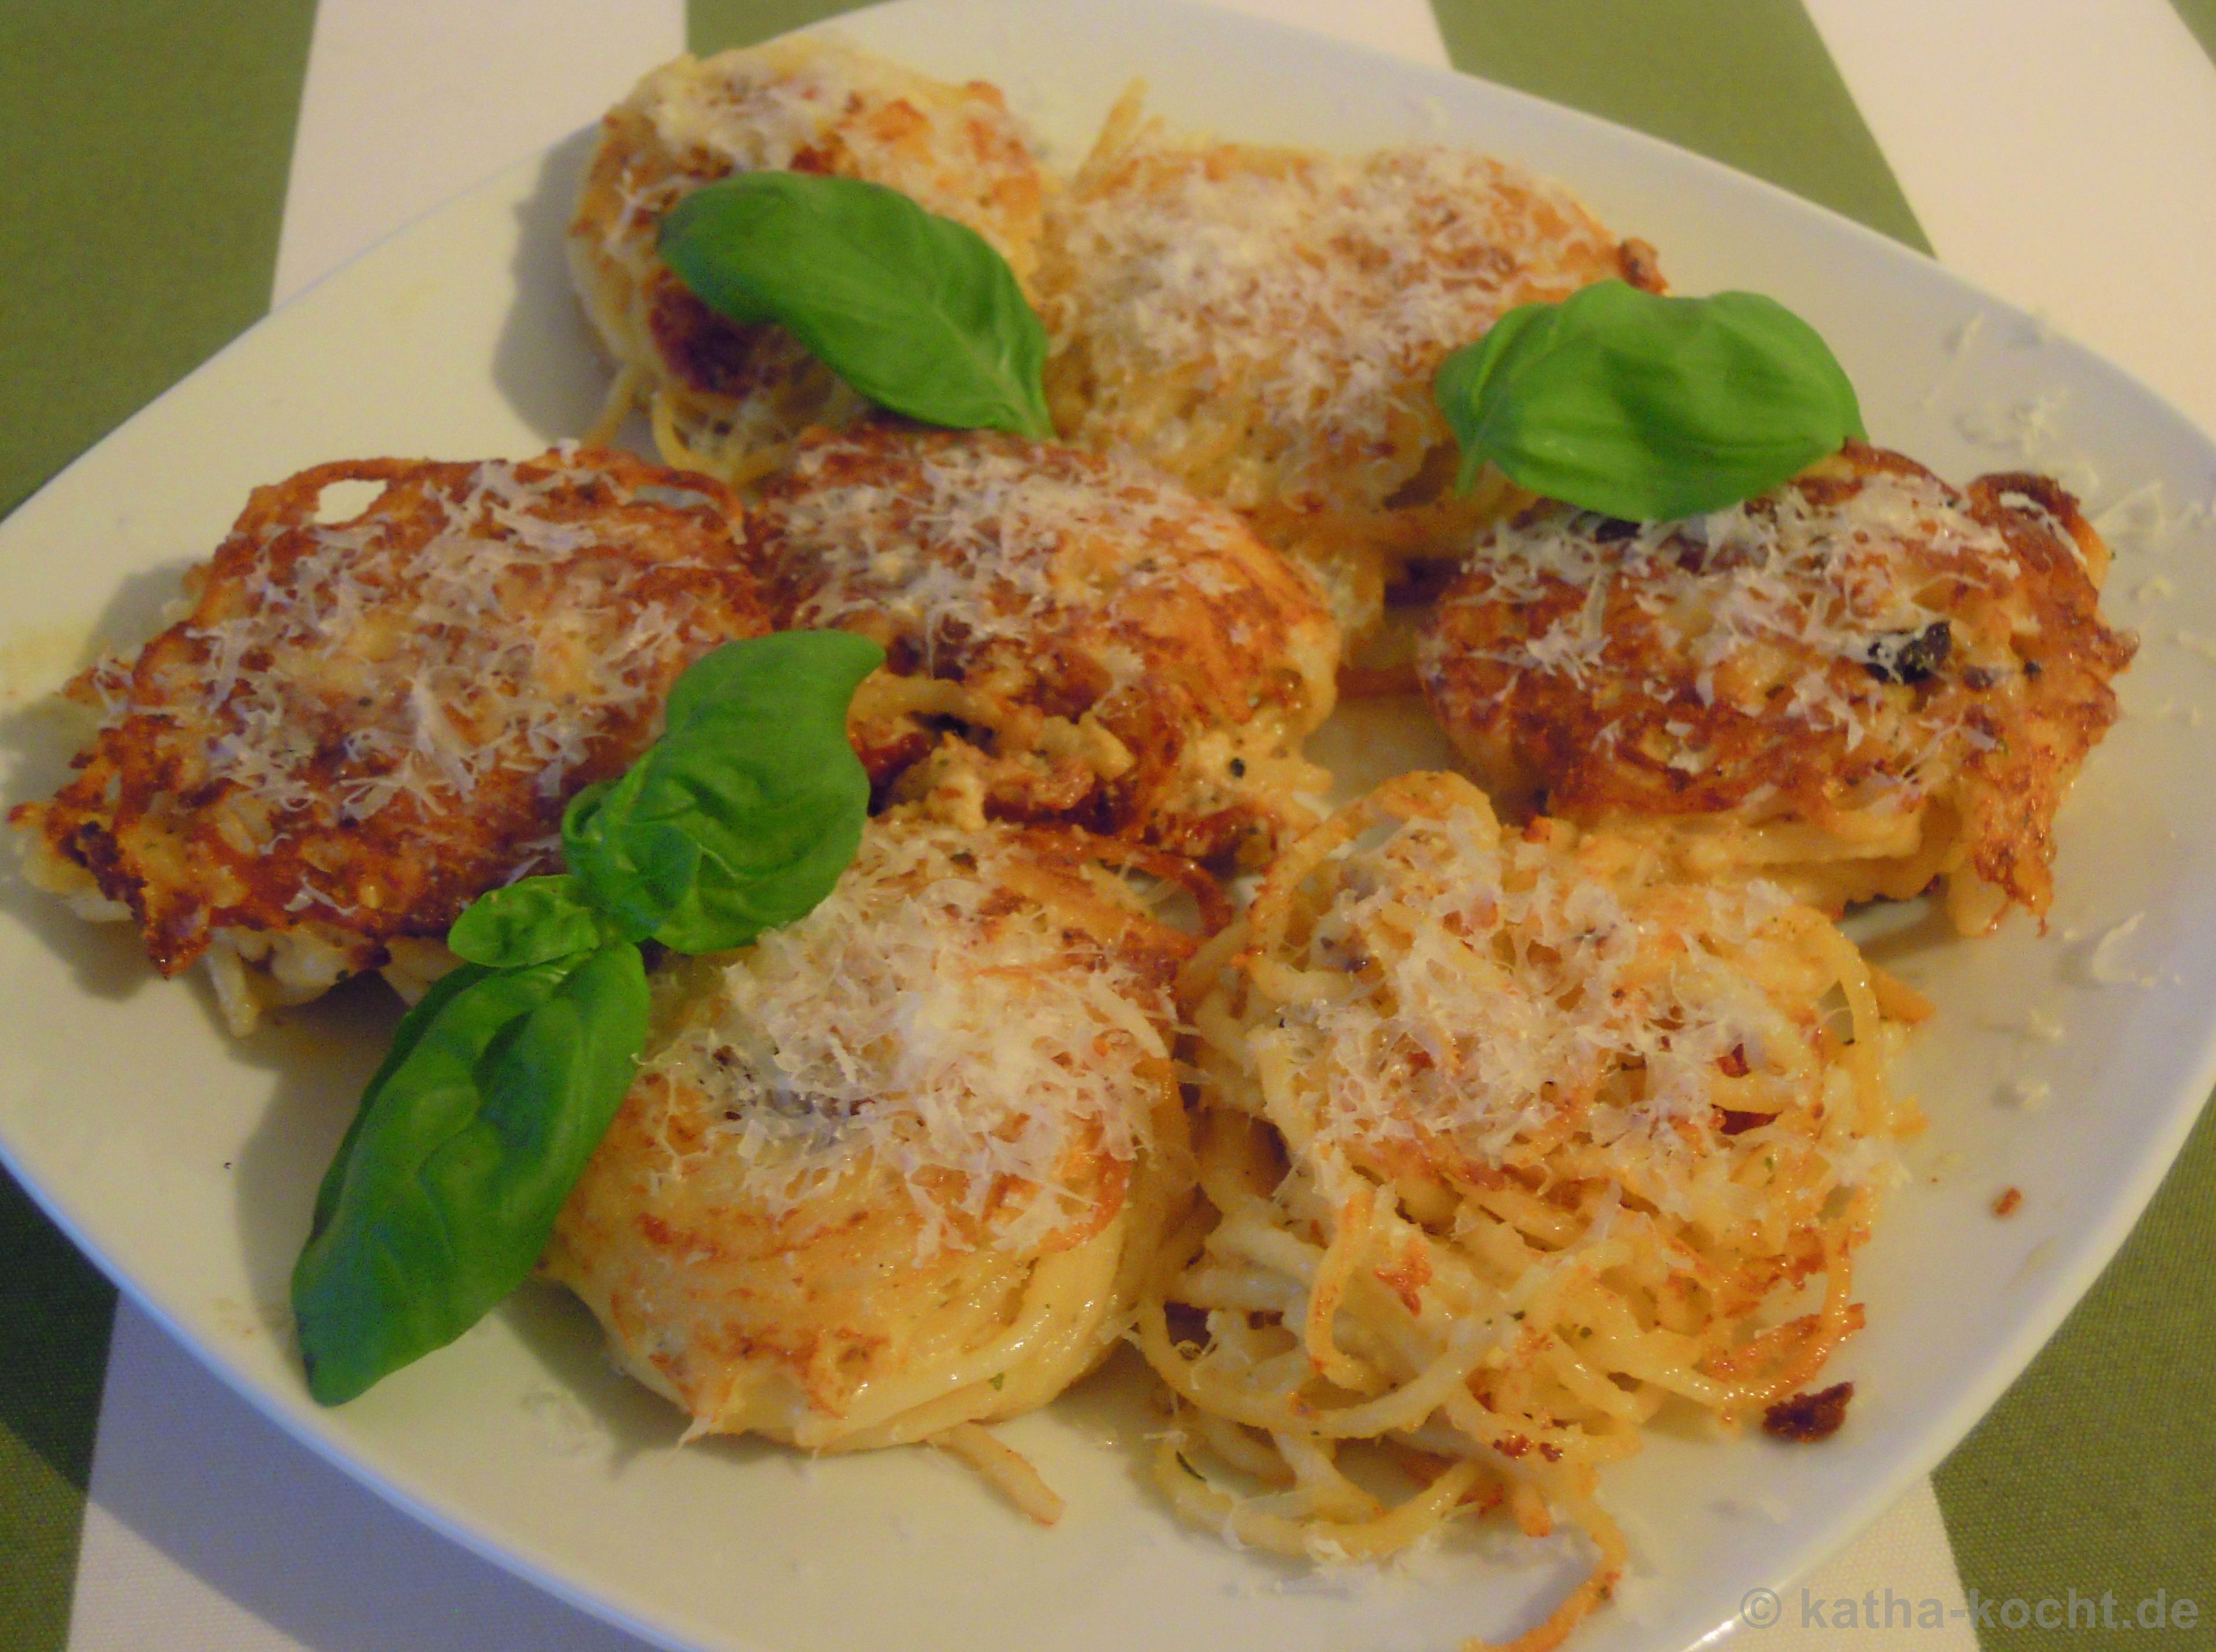 Spaghetti-Nester mit Schafskäse, getrockneten Tomaten und Parmesan